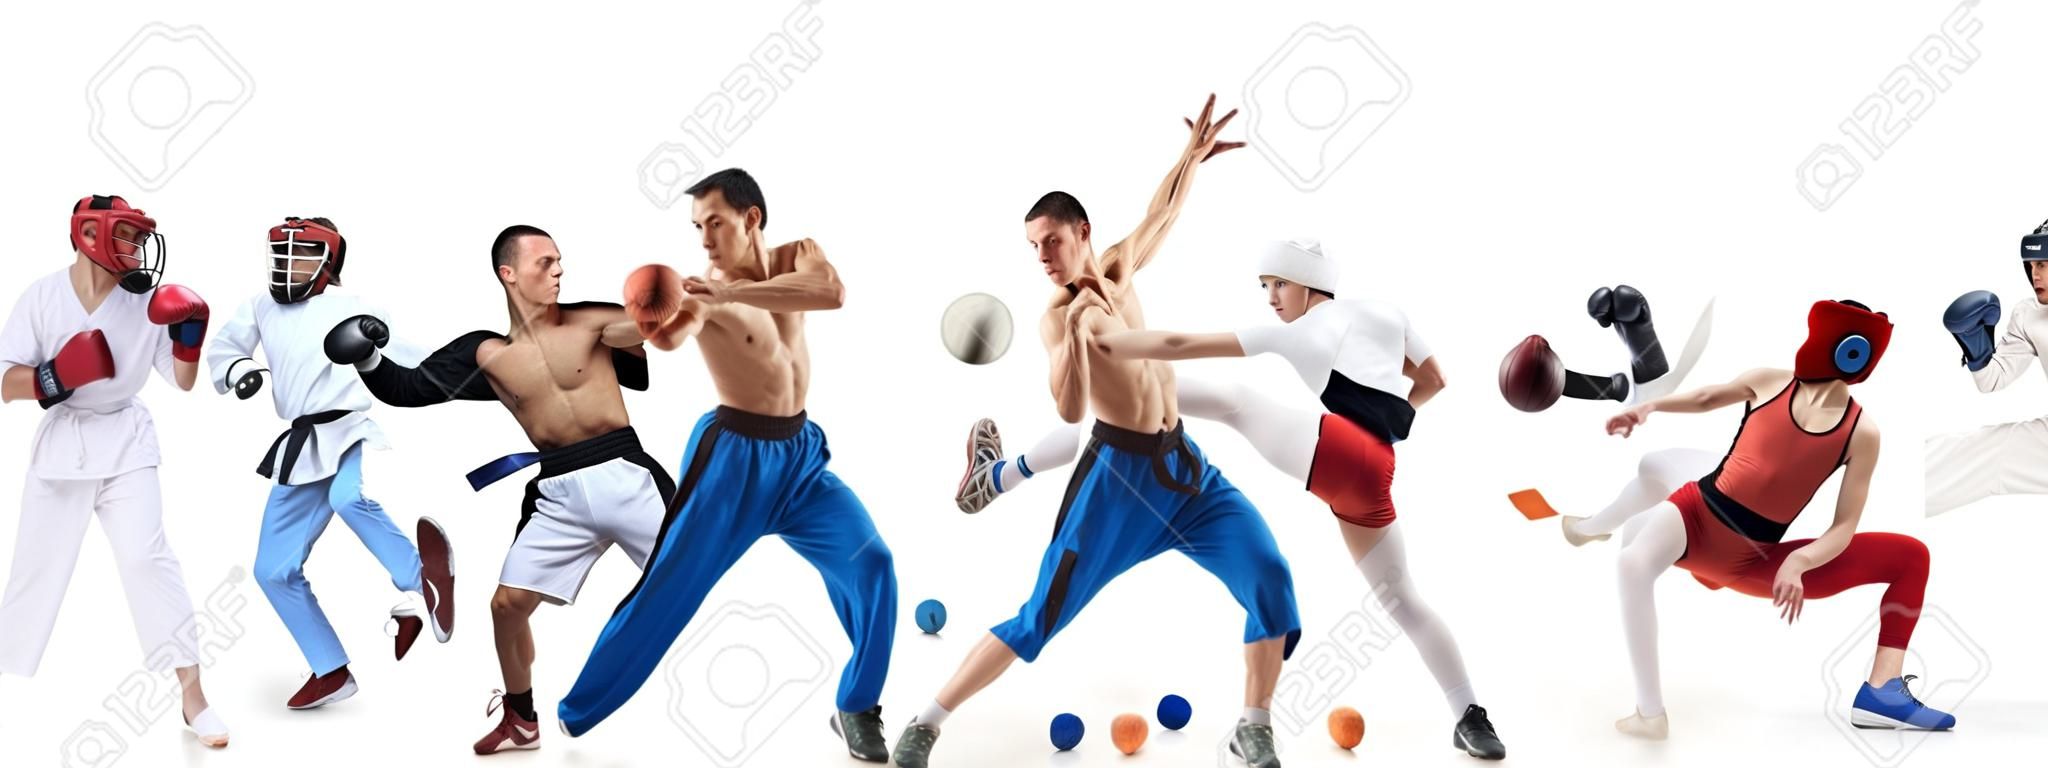 Спортивный коллаж о боксе, футболе, американском футболе, баскетболе, хоккее, фехтовании, беге, тхэквондо, теннисе